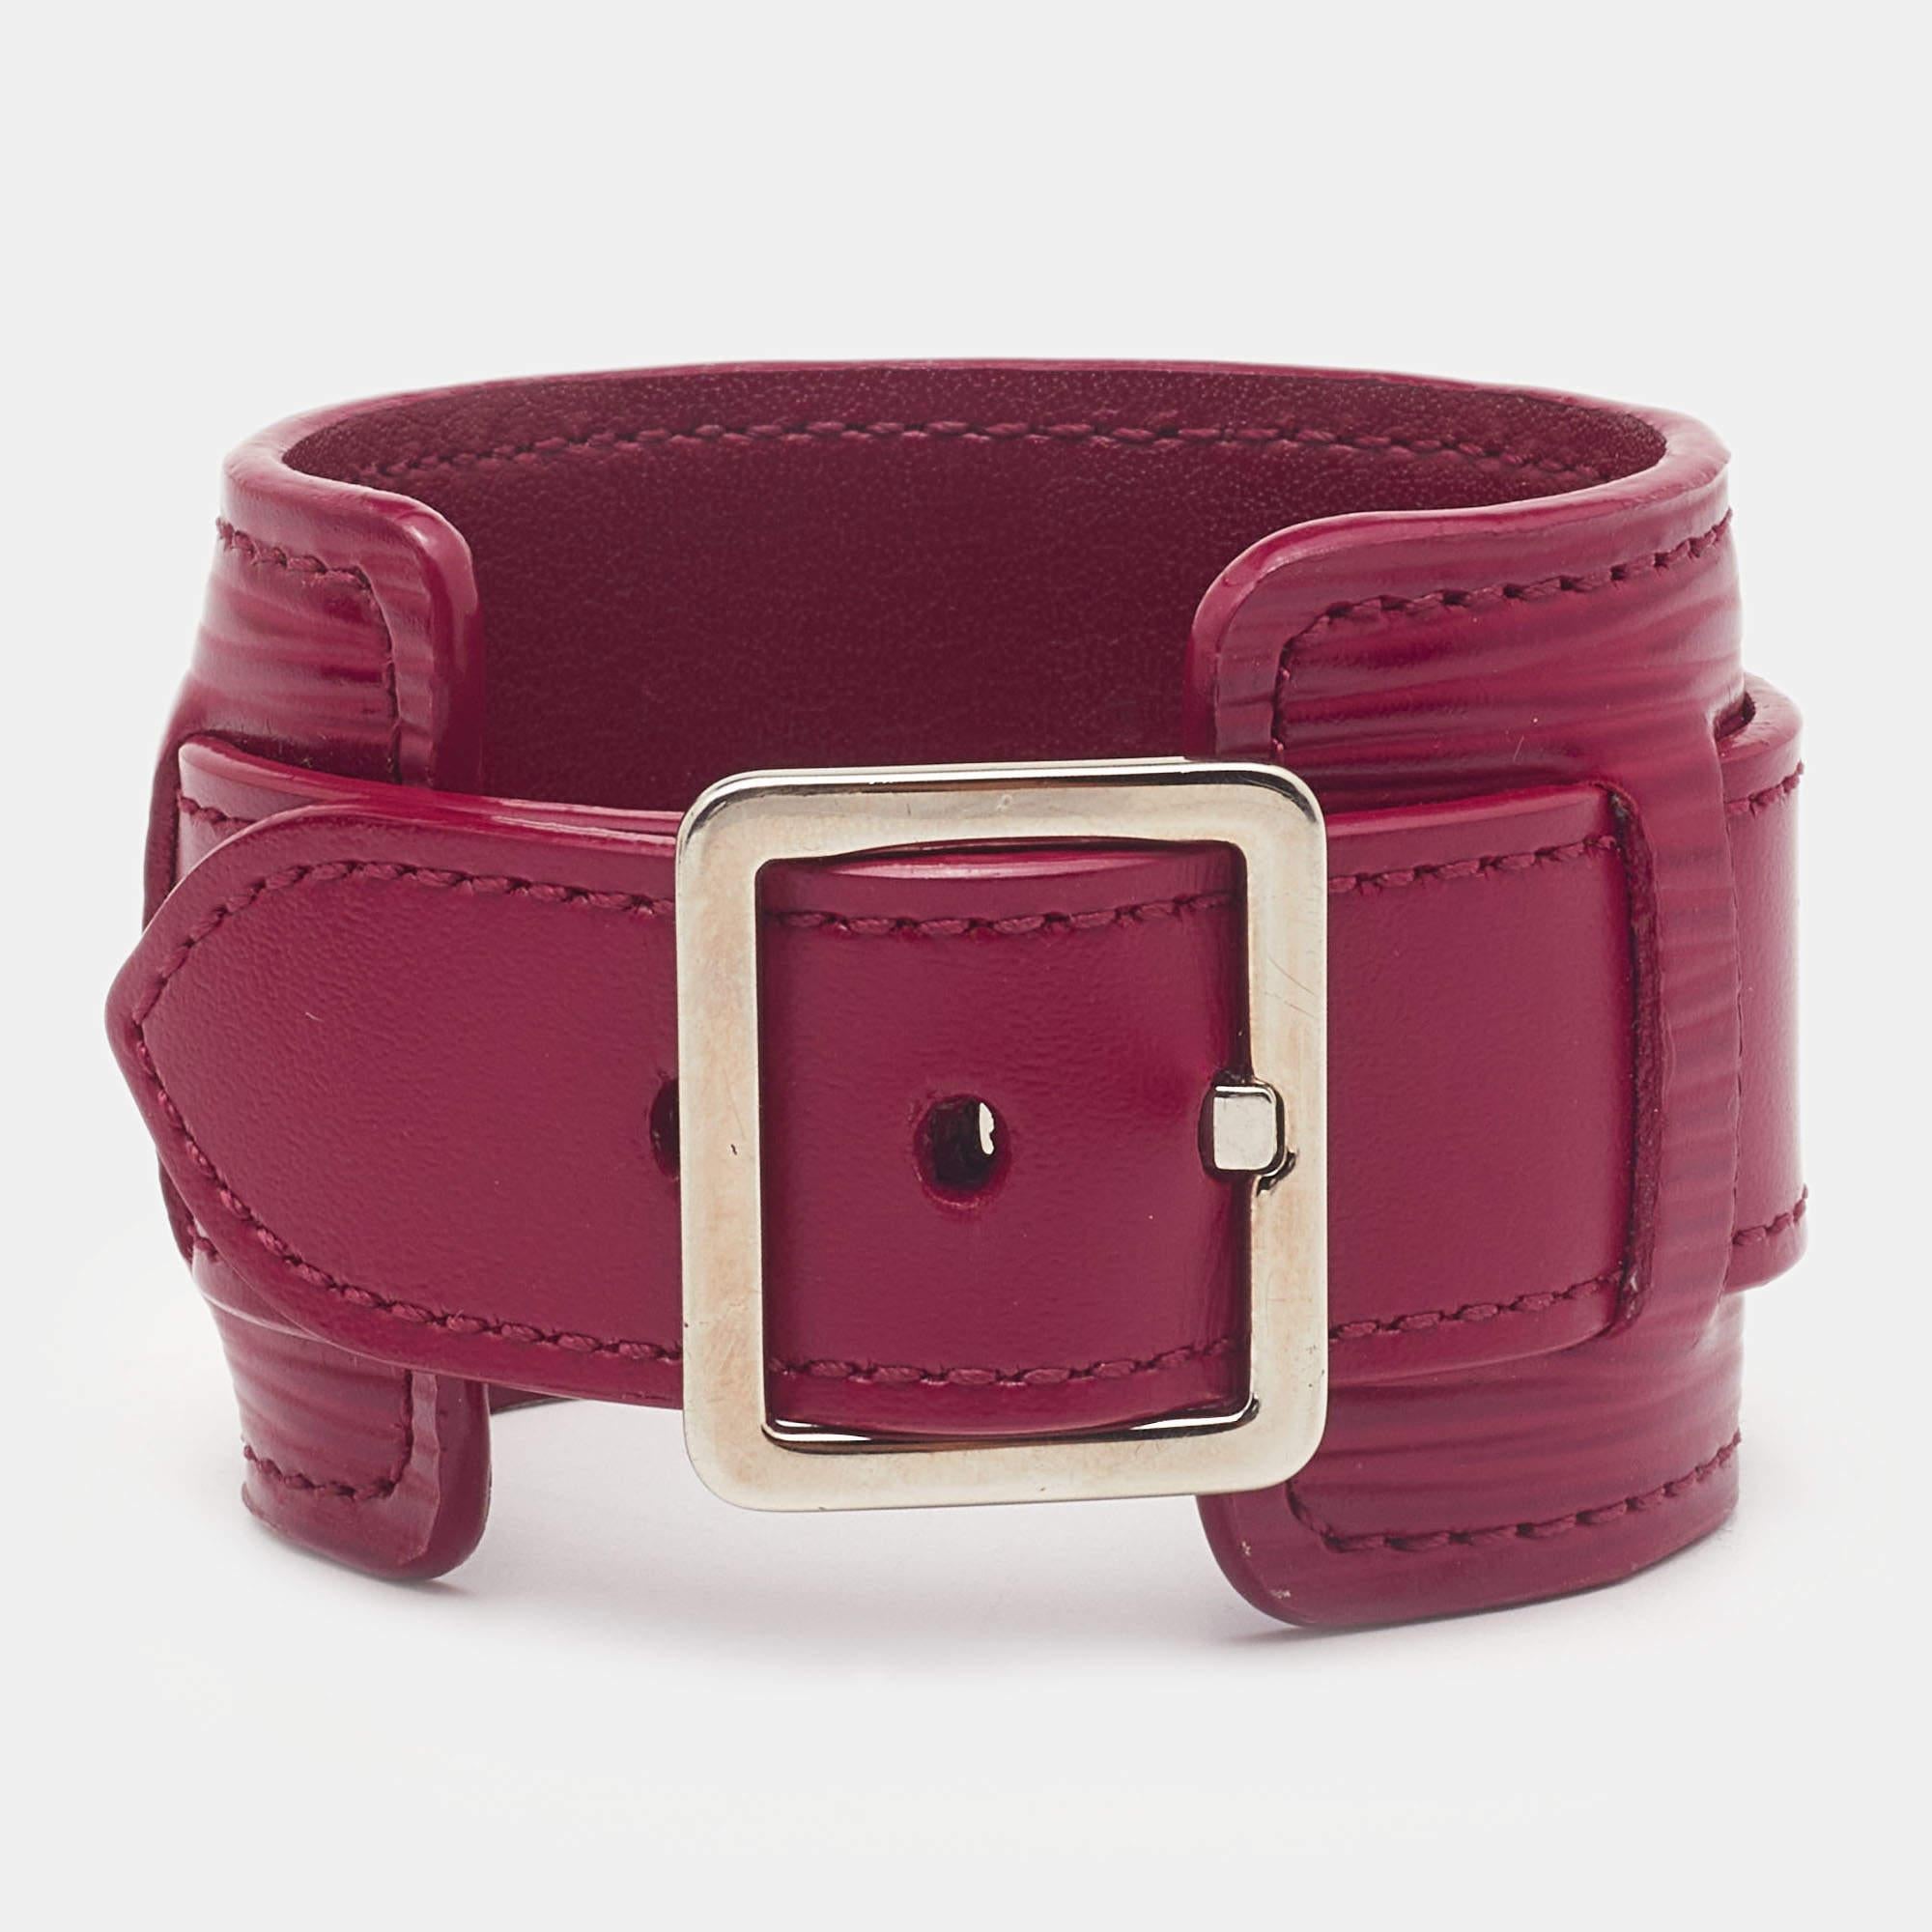 Louis Vuitton bietet Ihnen dieses wunderschöne Infinit-Armband aus Vernis-Leder, das Sie bei all Ihren Ausflügen begleiten wird, Tag für Tag. Das Armband ist mit einem gravierten, emaillierten Vorhängeschloss versehen.

Enthält: